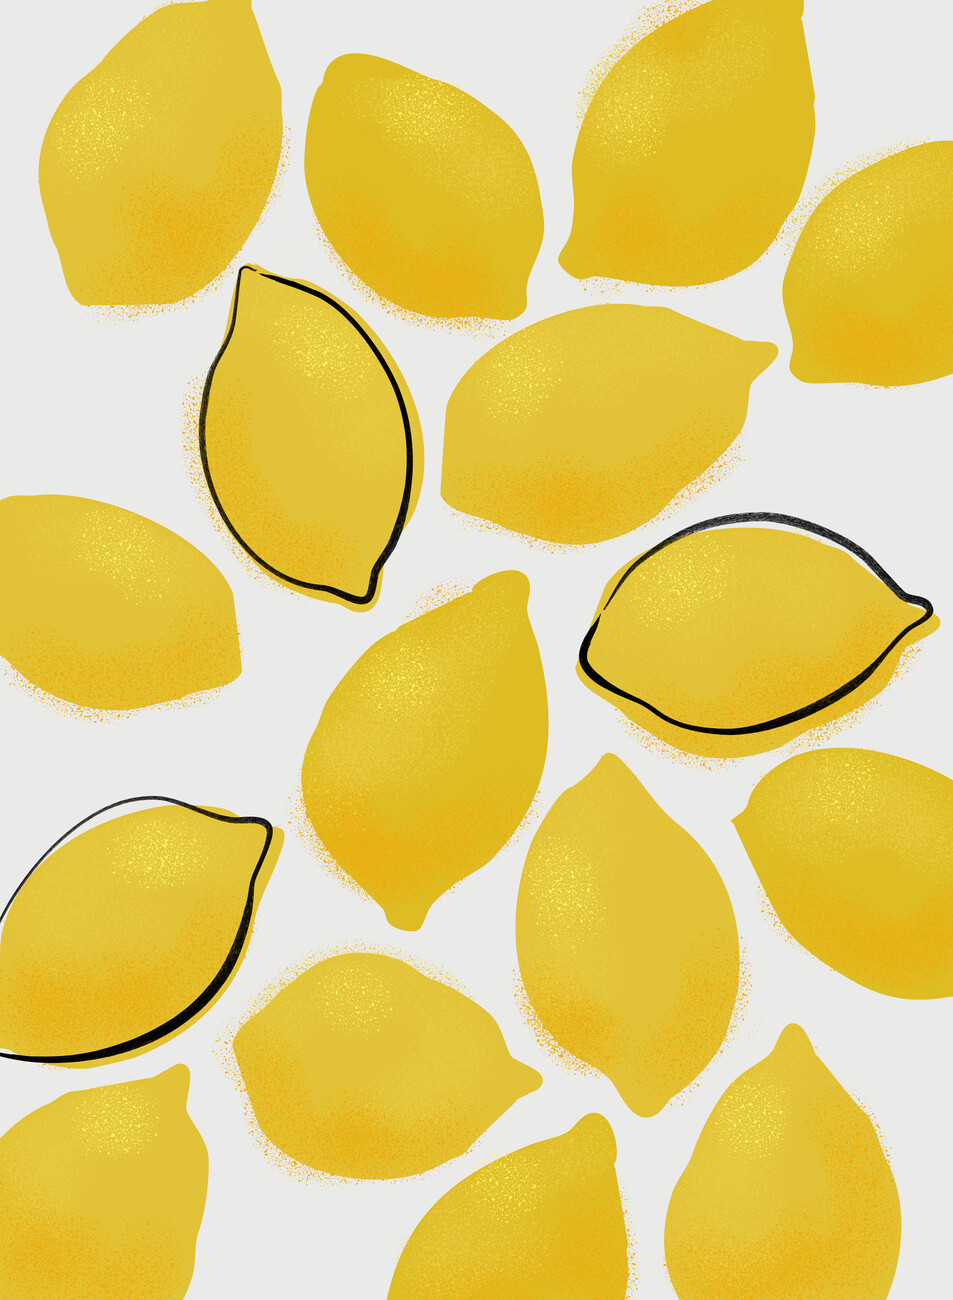 Kuva Jenue lemons